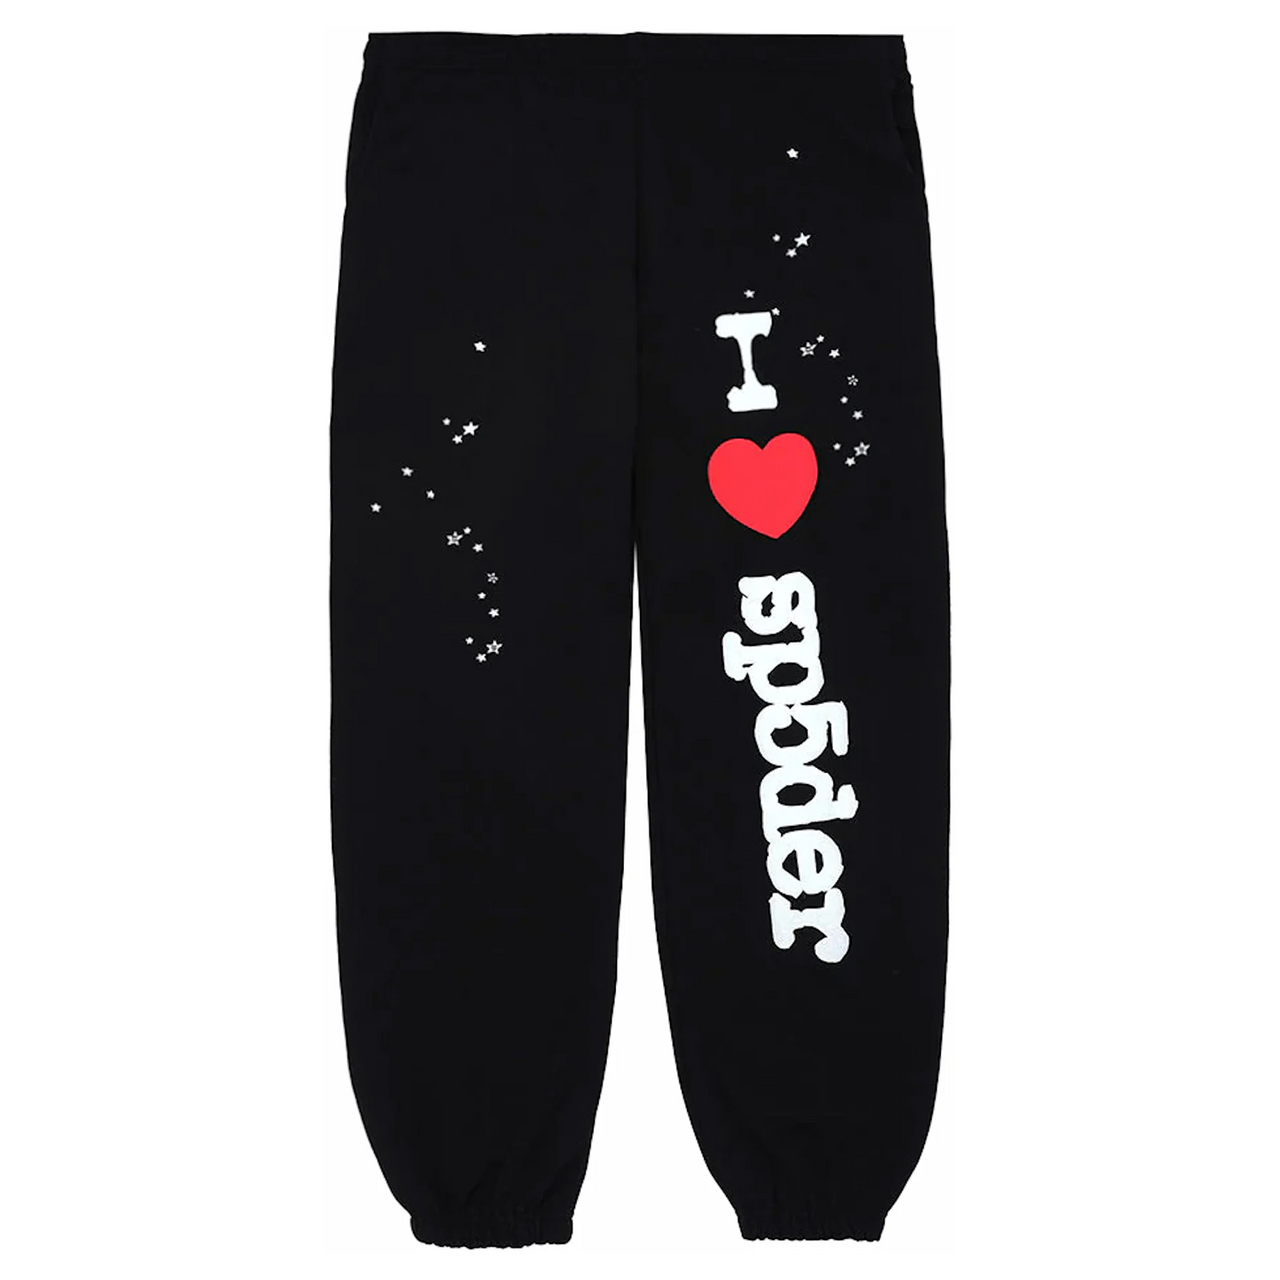 Sp5der Worldwide I Heart Sp5 NY Pop Up Sweatpants Black